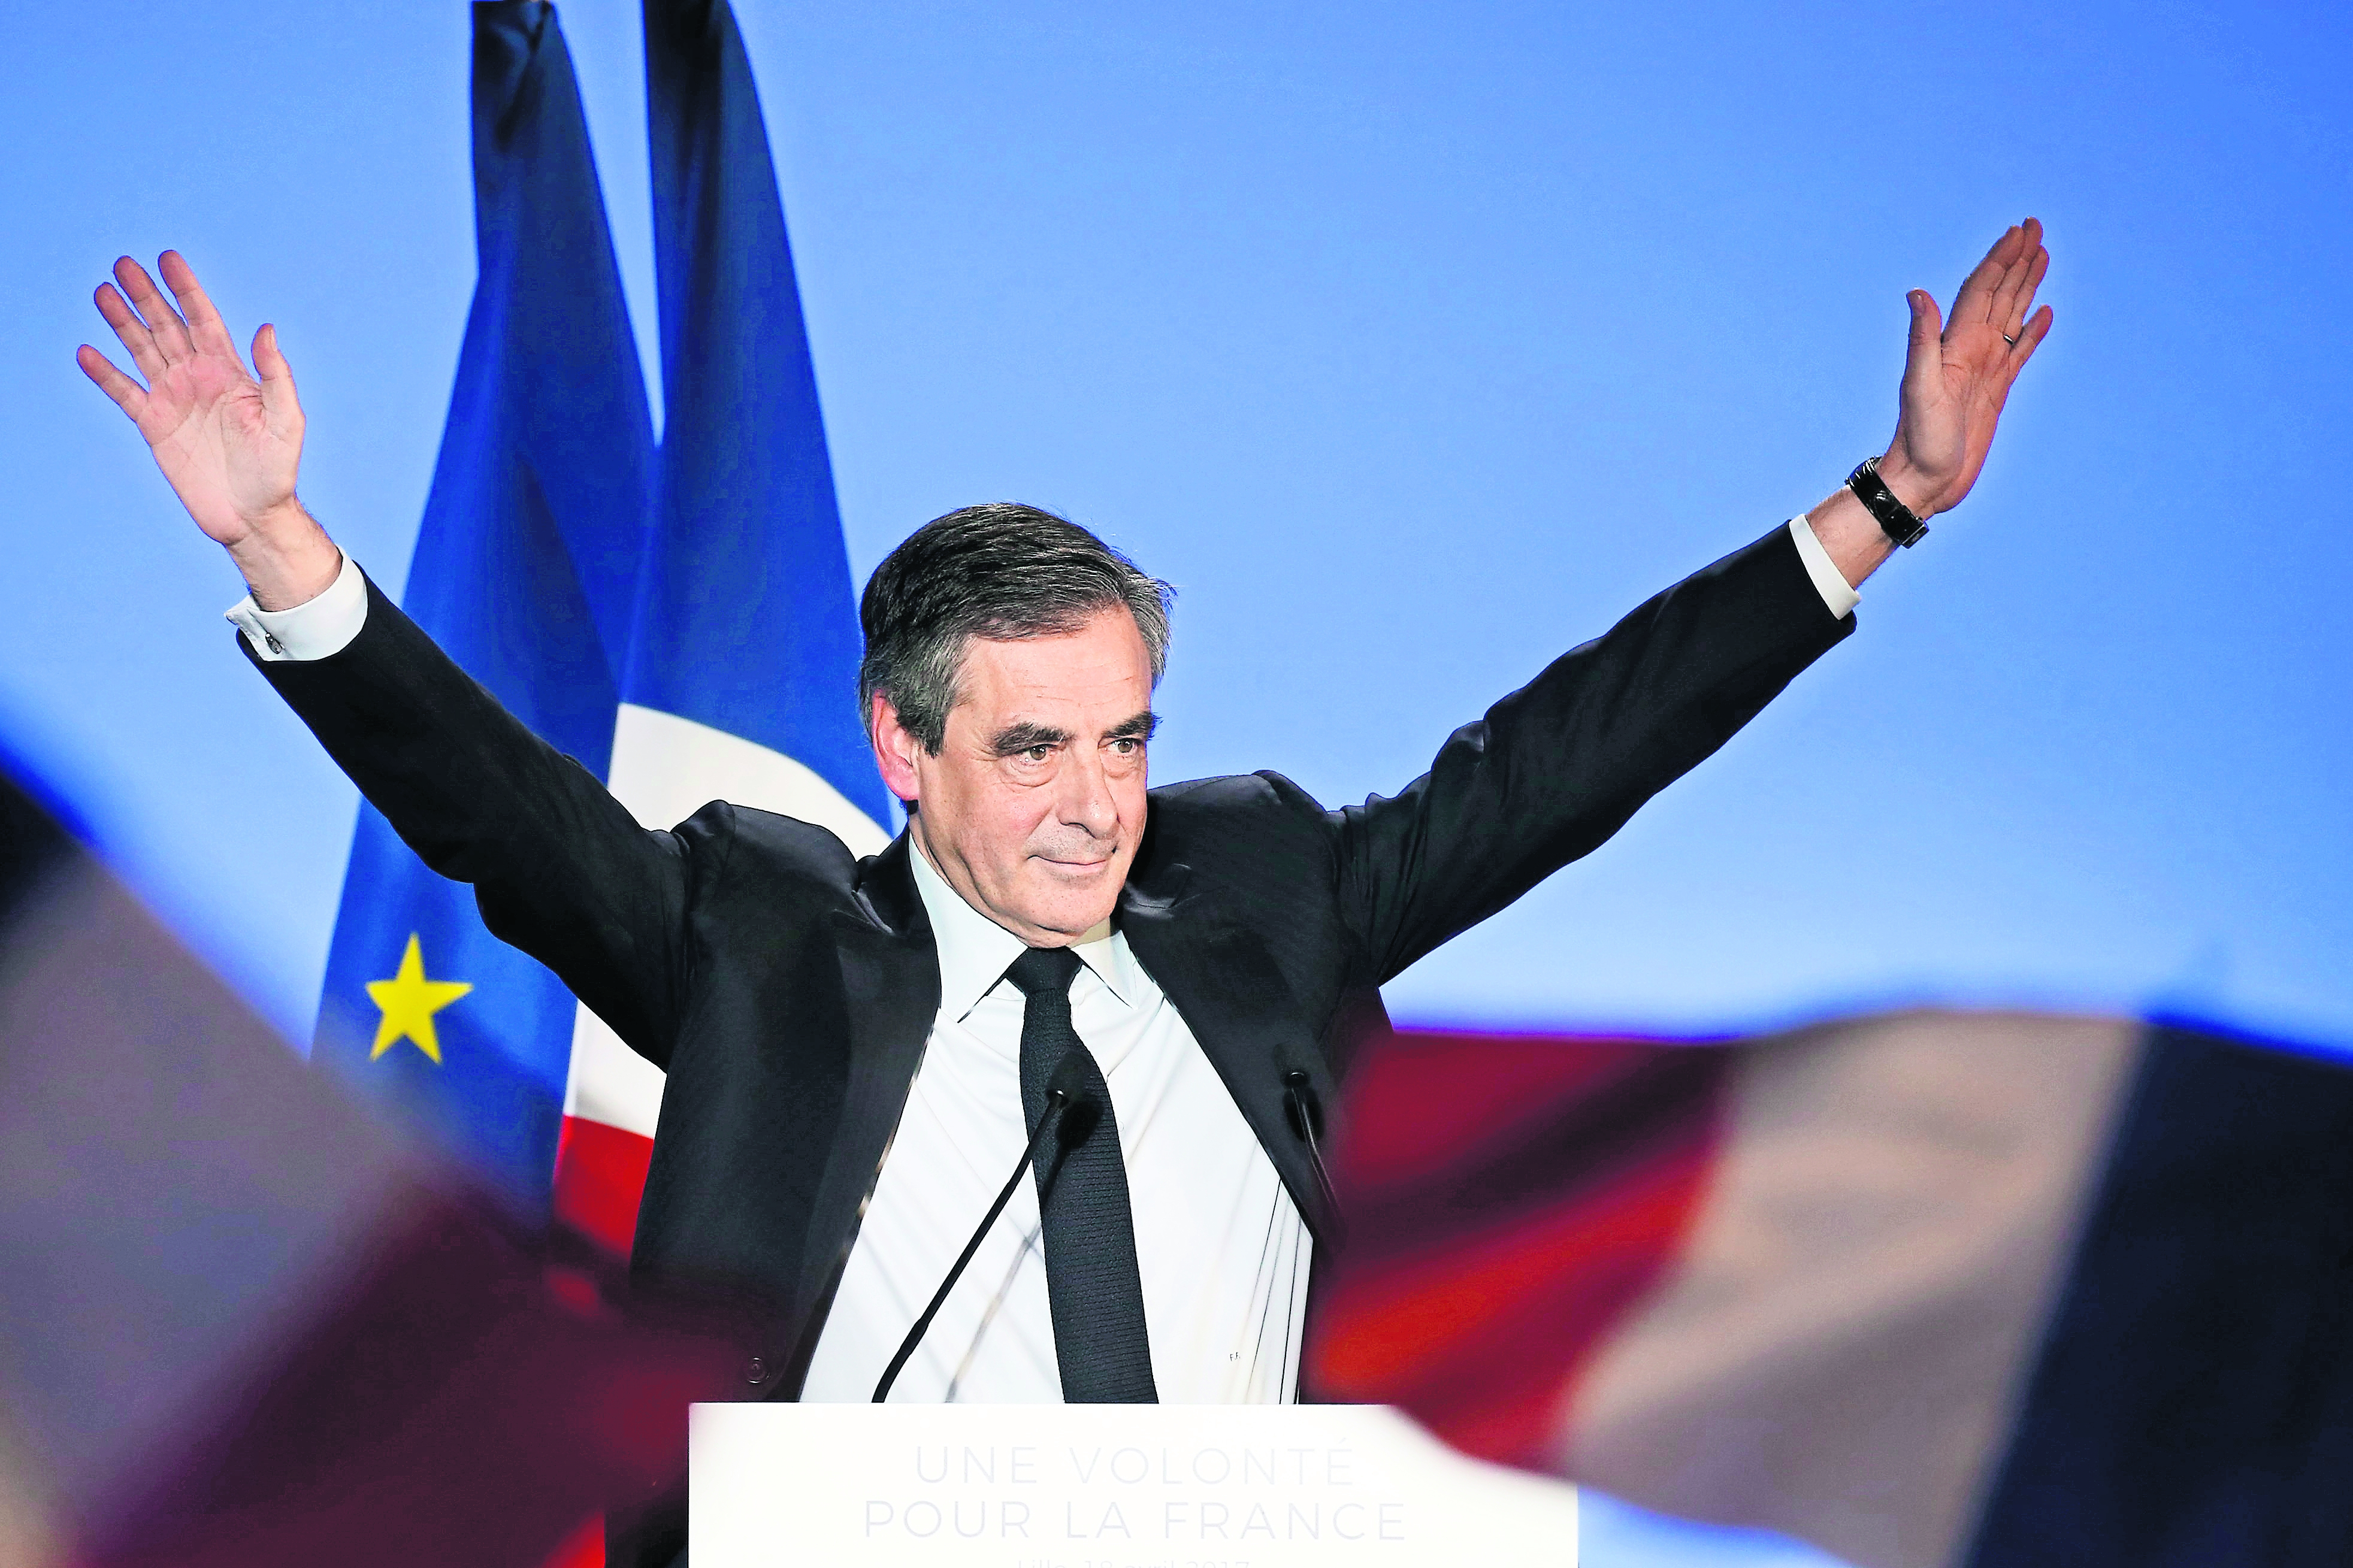 François Fillon, una estrella bajo la sombra de la corrupción